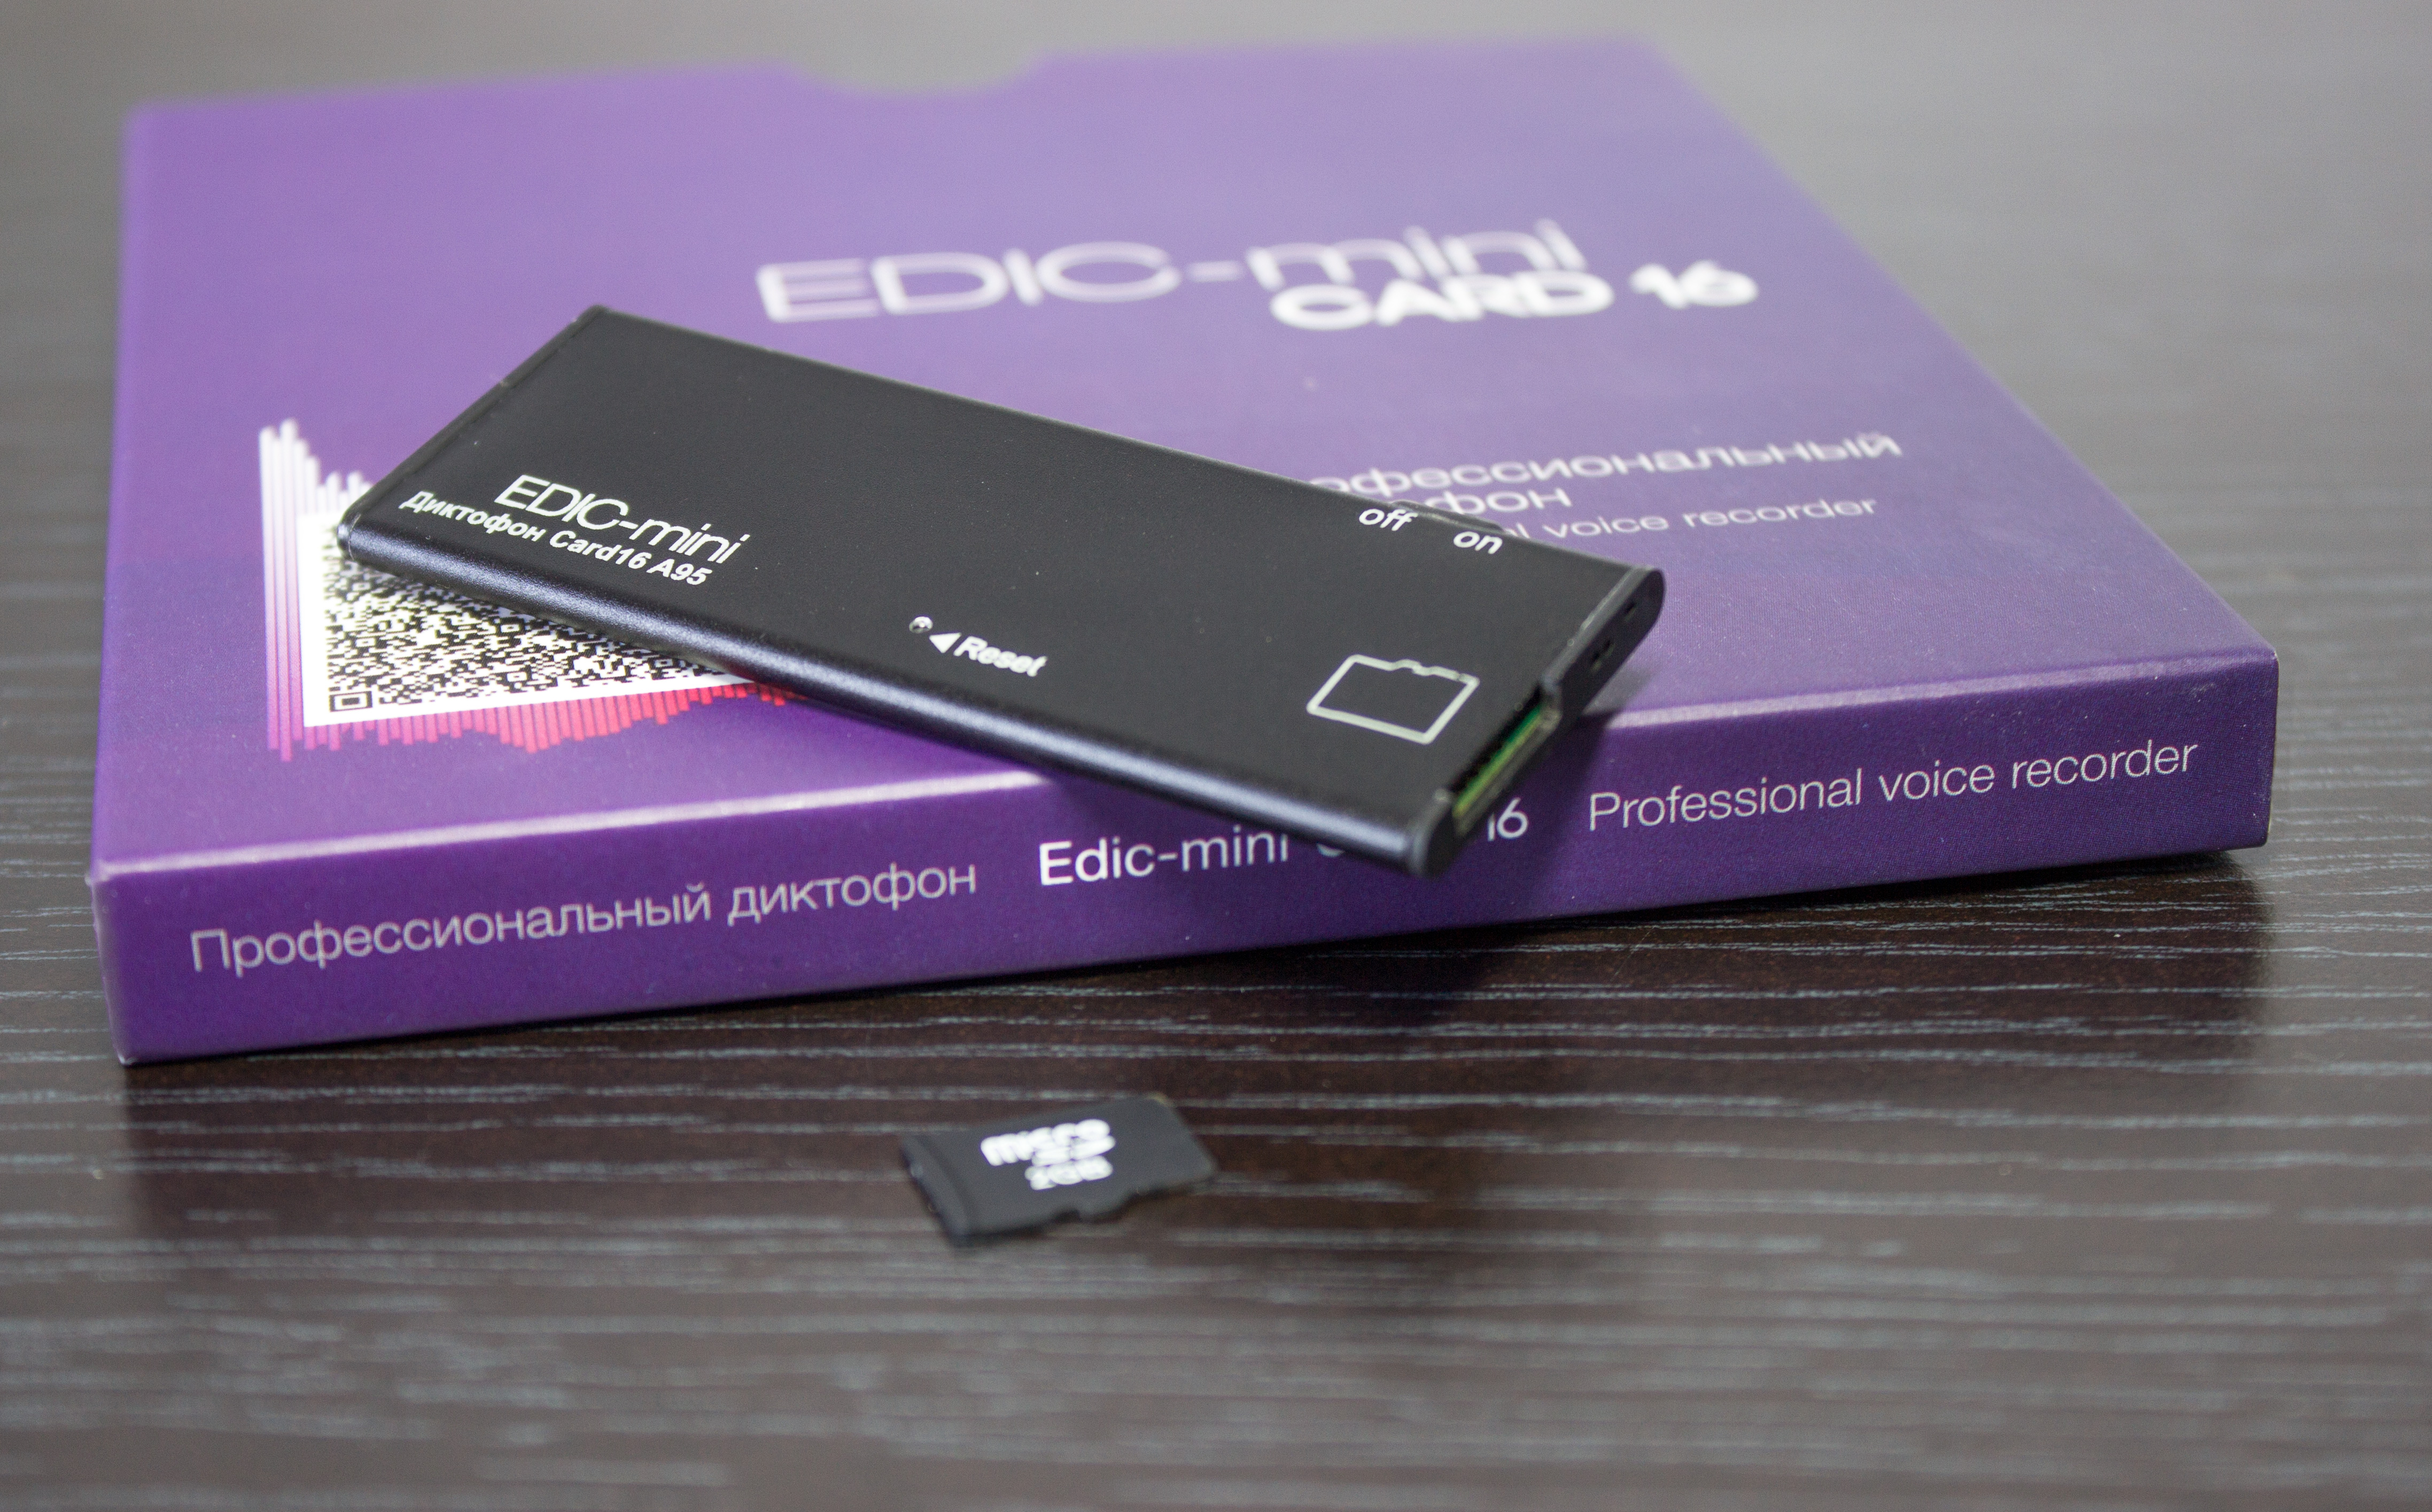 Все Телесистемы EM Card16 А95 (металл, размер 3.5*27*77мм, вес 12г, автономность до 70ч, аккумулятор) видеонаблюдения в магазине Vidos Group